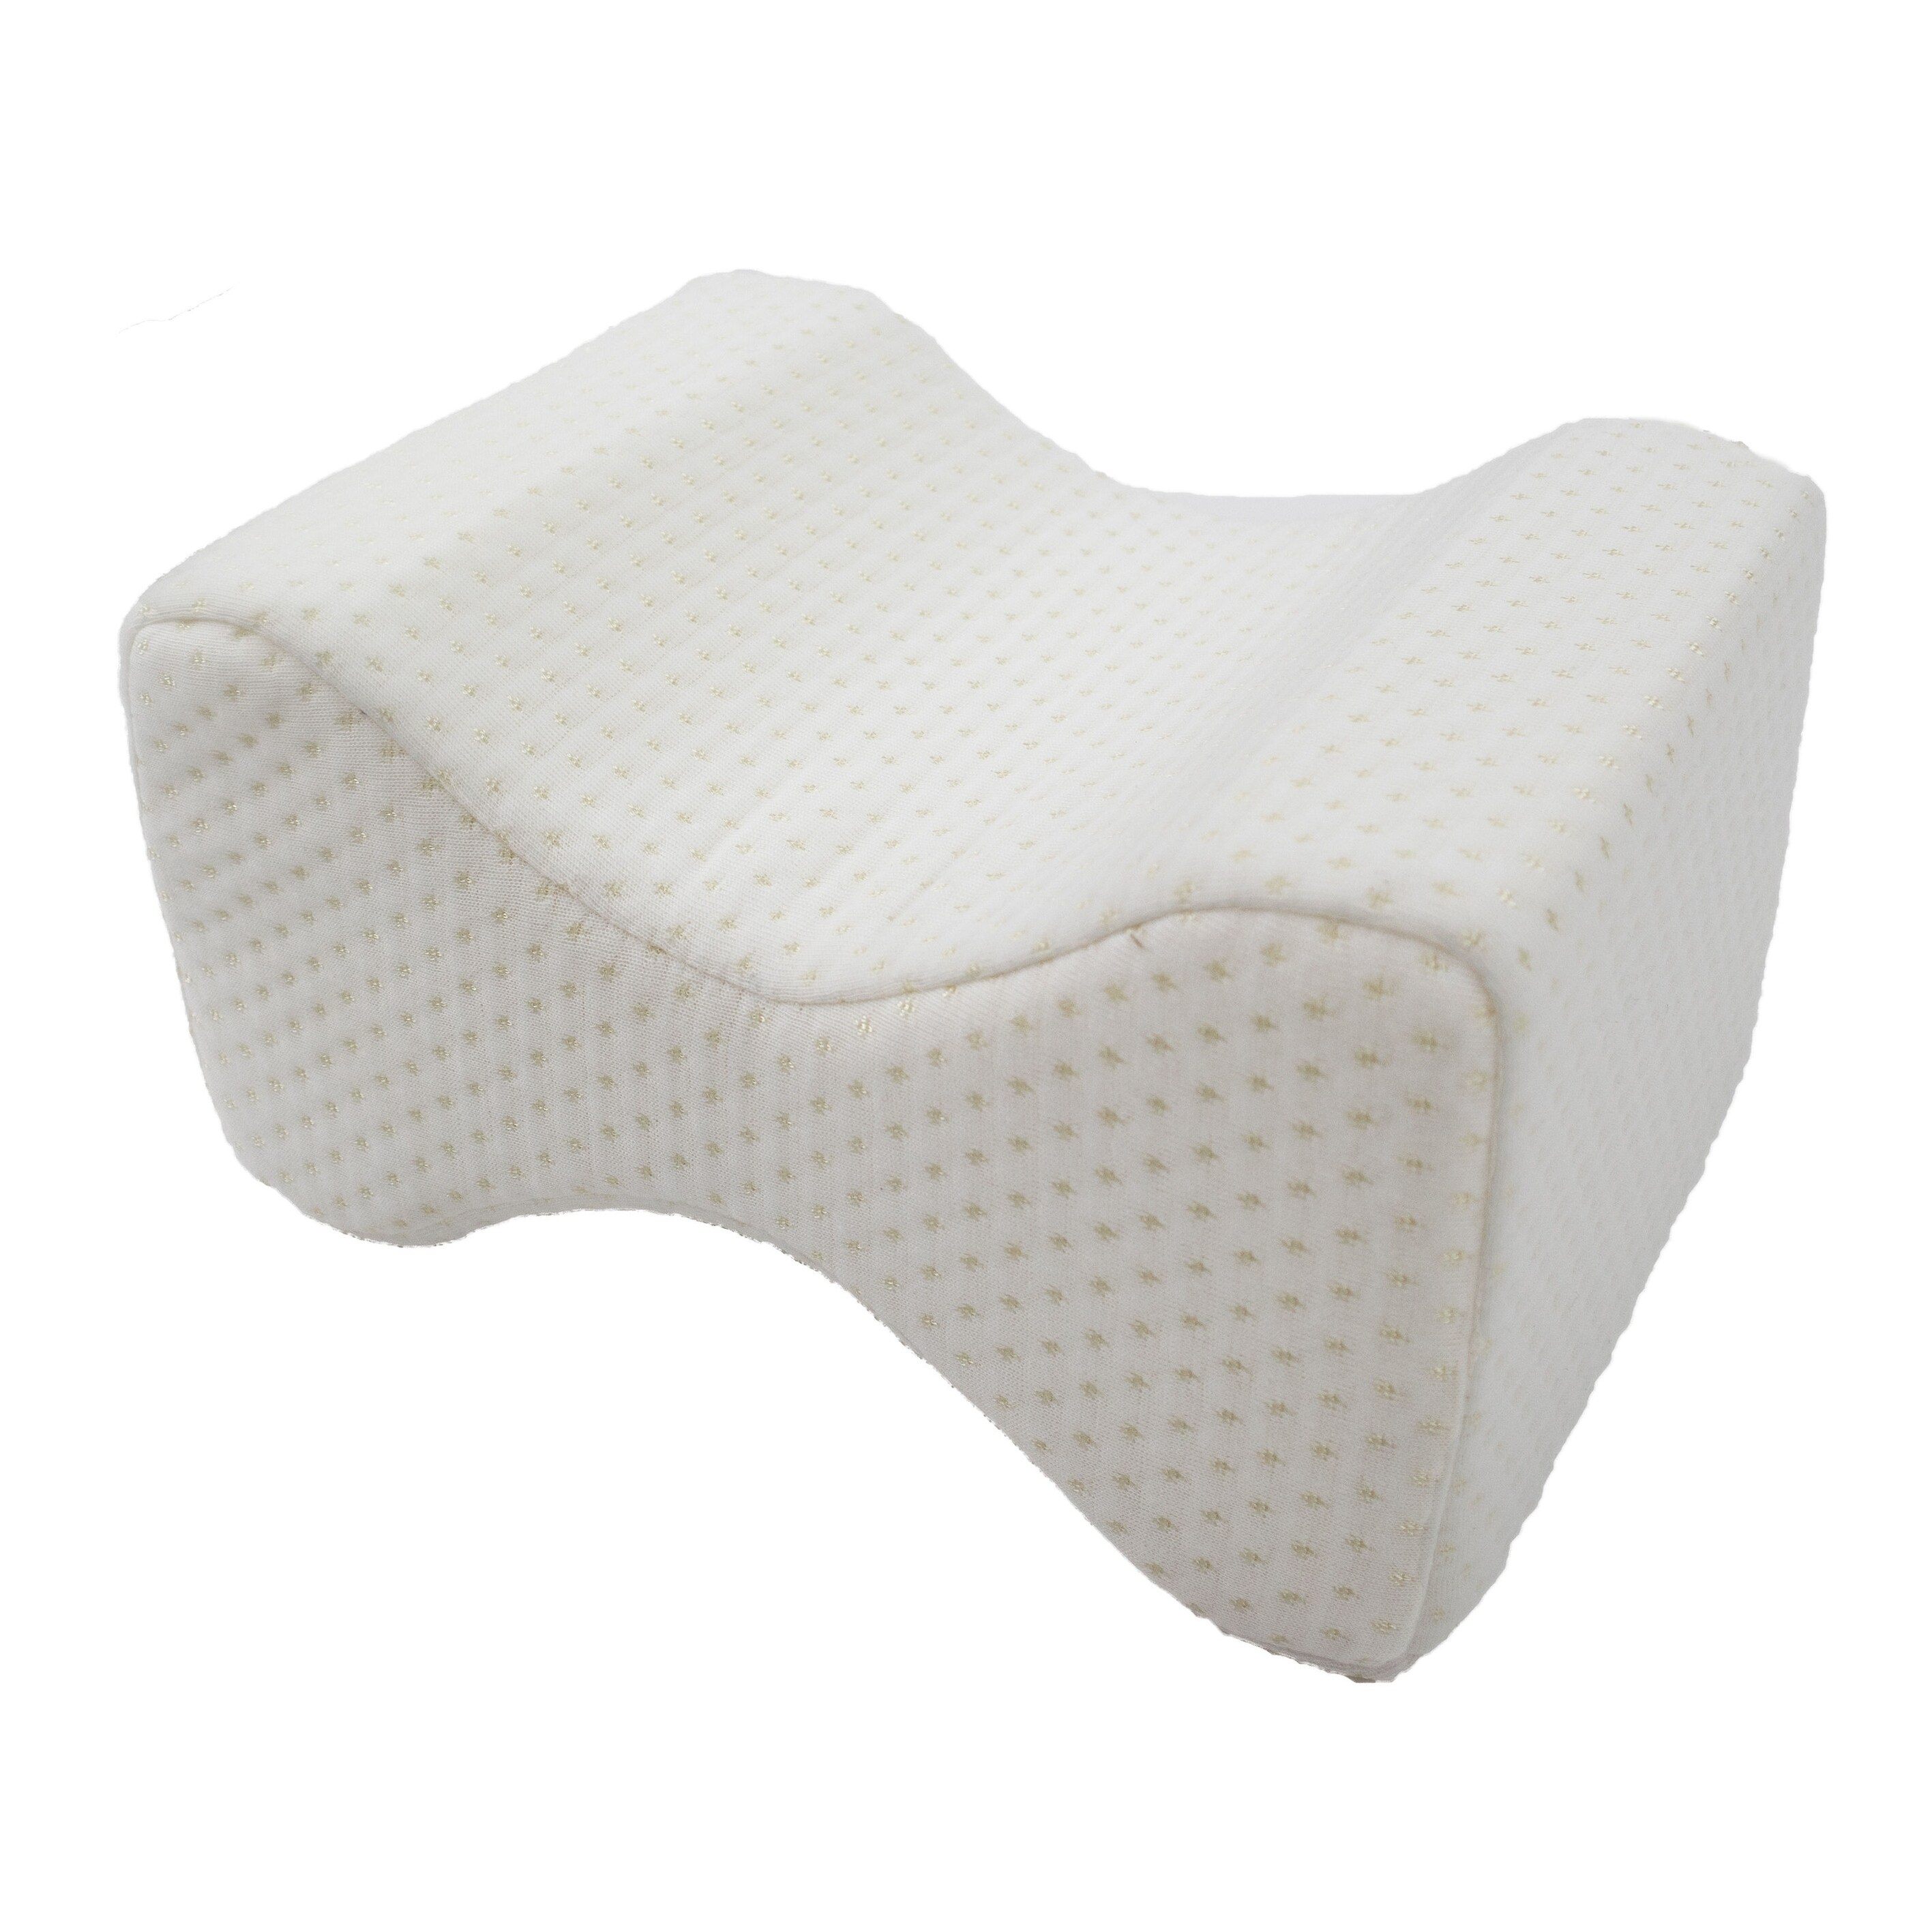 Wennebird Model Q Lumbar Memory Foam Support Pillow To Improve